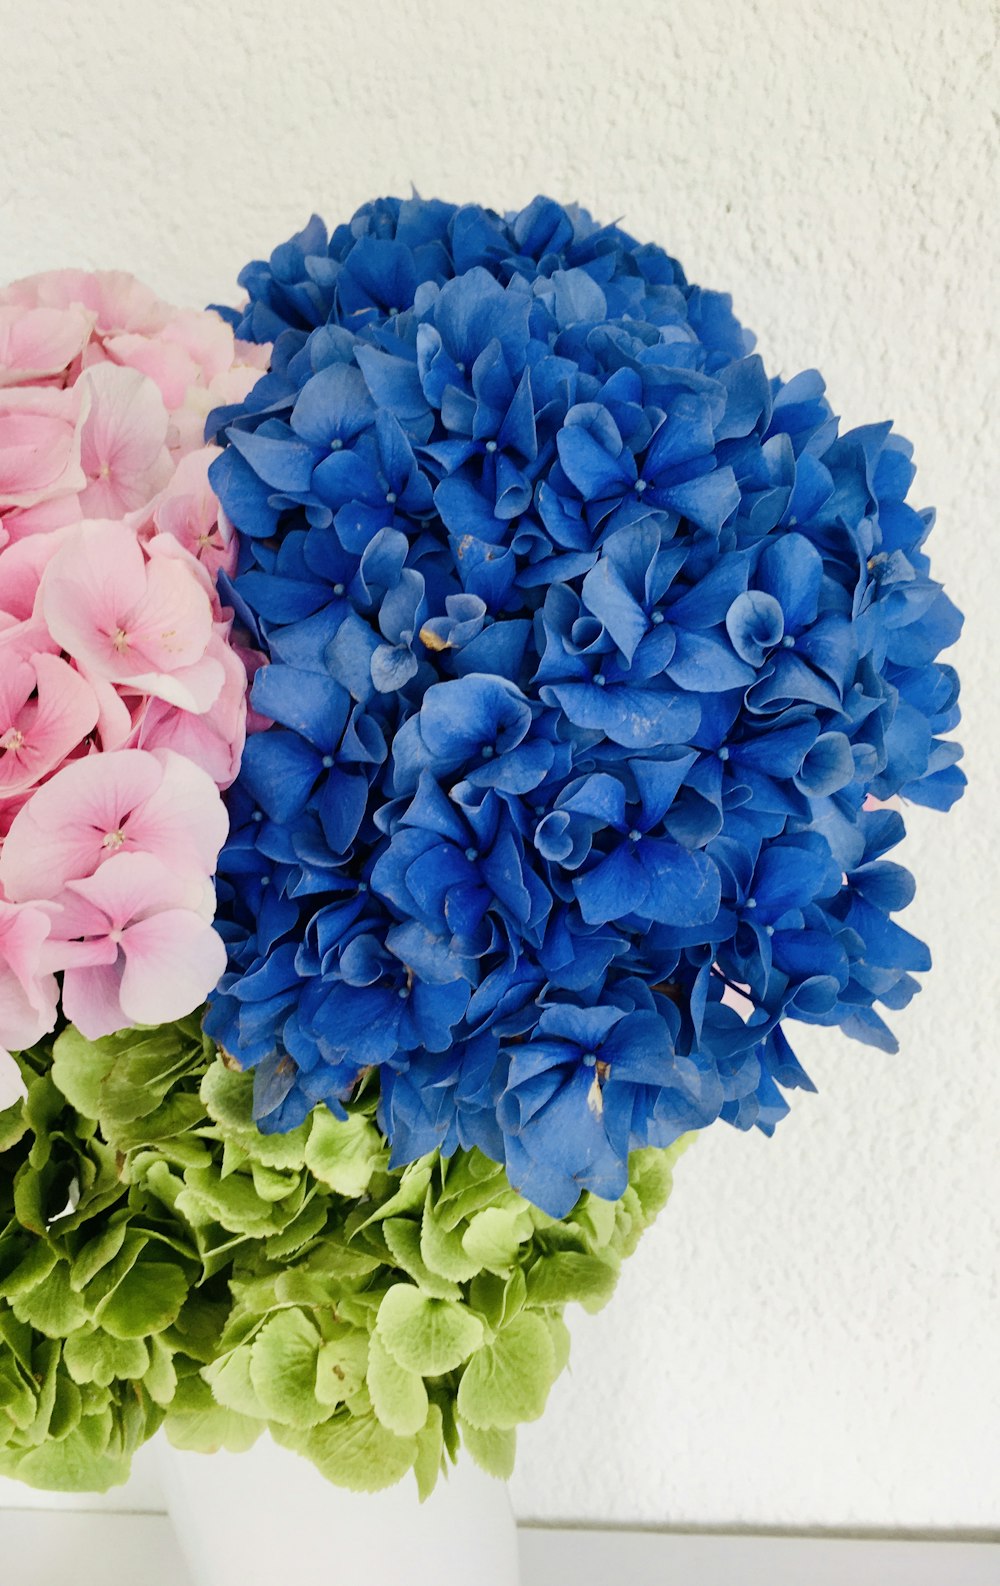 하얀 테이블에 푸른 꽃 꽃다발